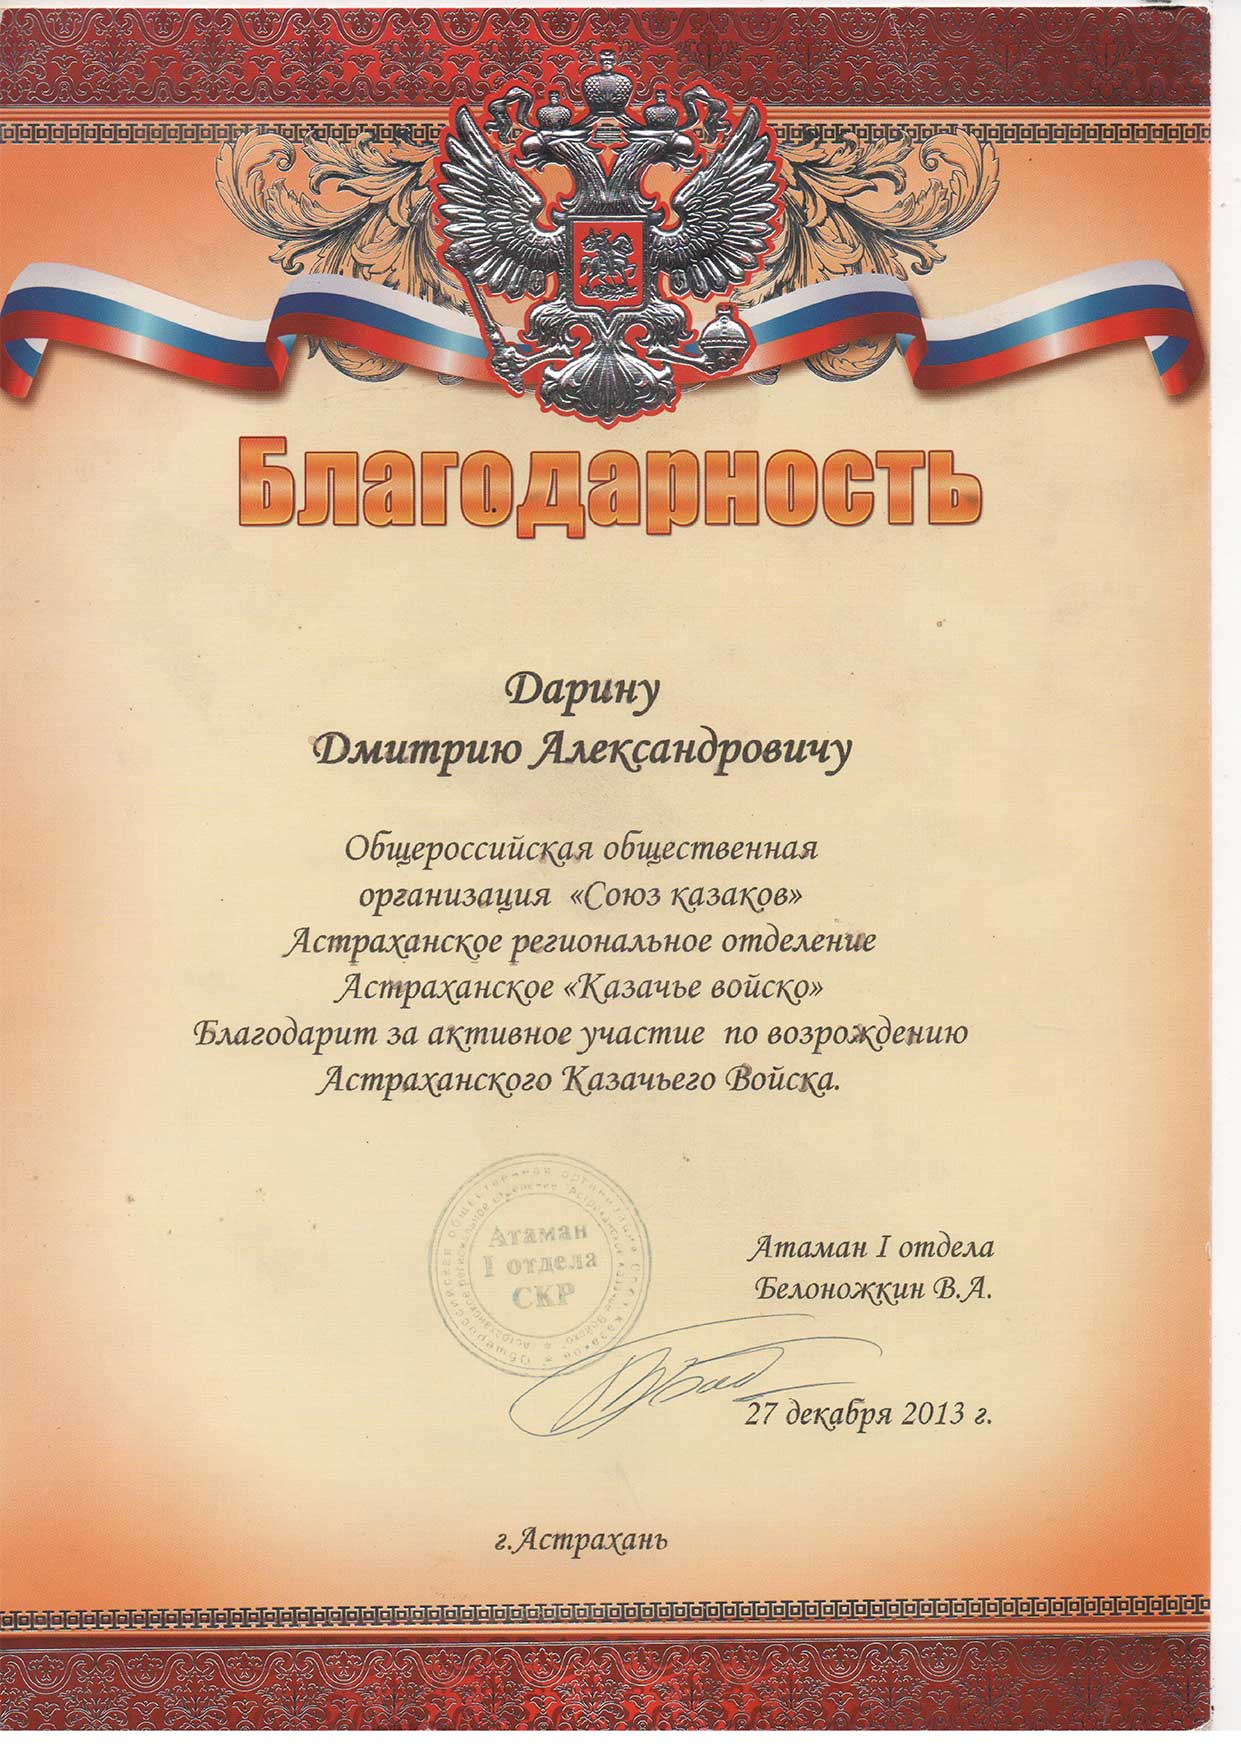 Благодарность-Союза-казаков--Астраханское-казачье-войско--2013